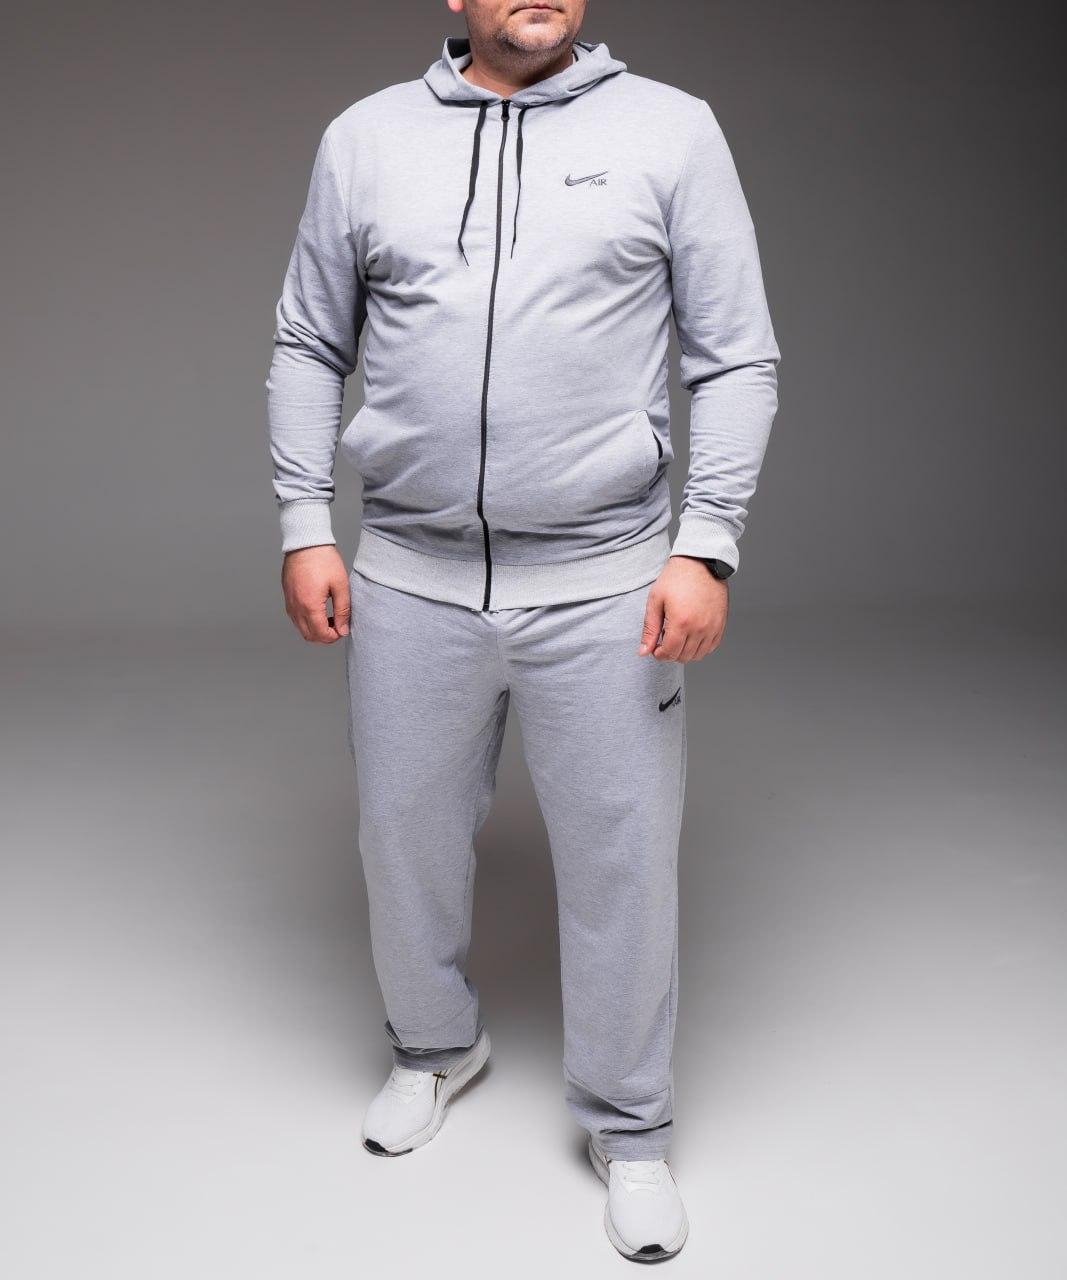 Чоловічий світло-сірий спортивний костюм Nike з капюшоном Батал / Сірий спортивний чоловічій костюм Nike весна-літо